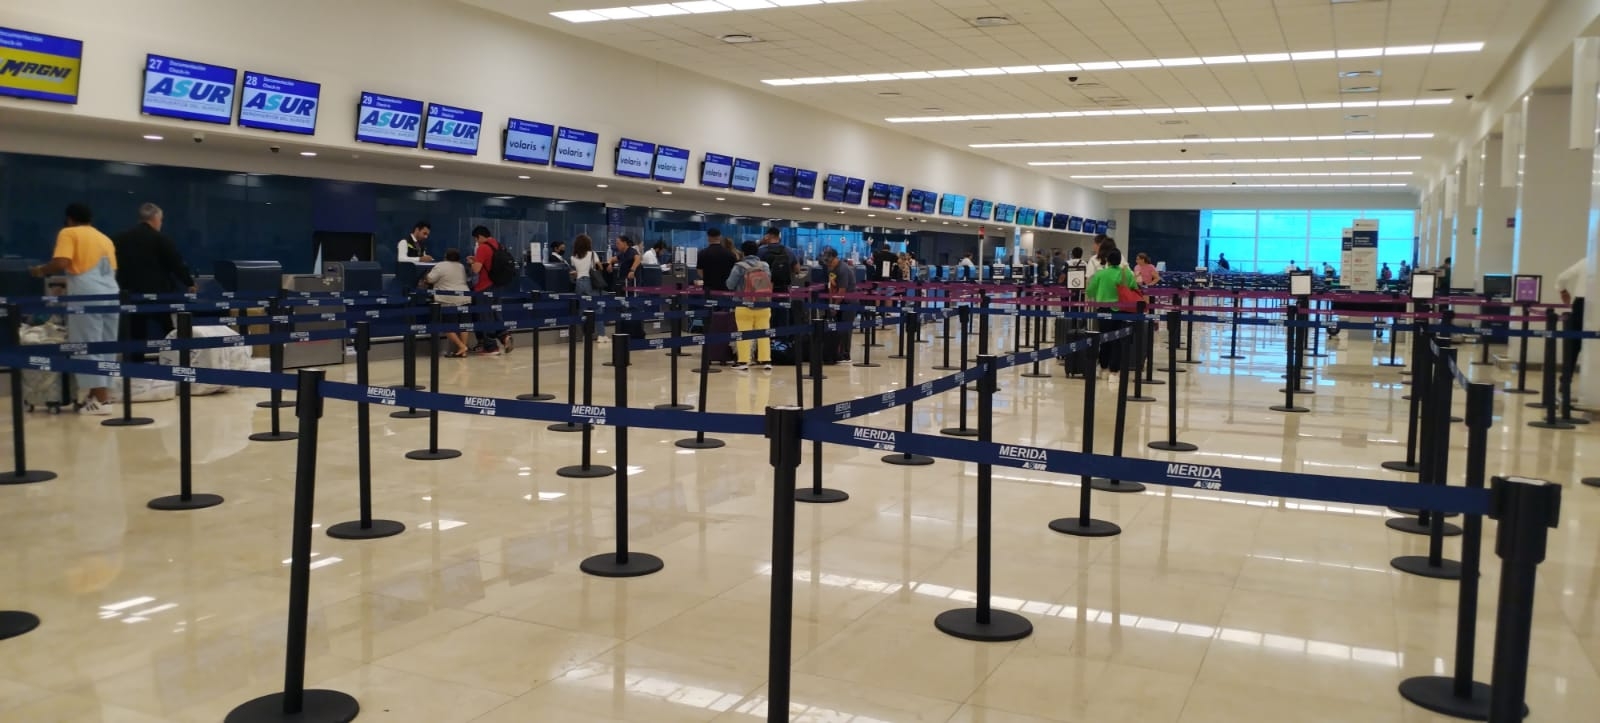 Por una avería mecánica, United retrasa nueve horas el vuelo Mérida-Houston